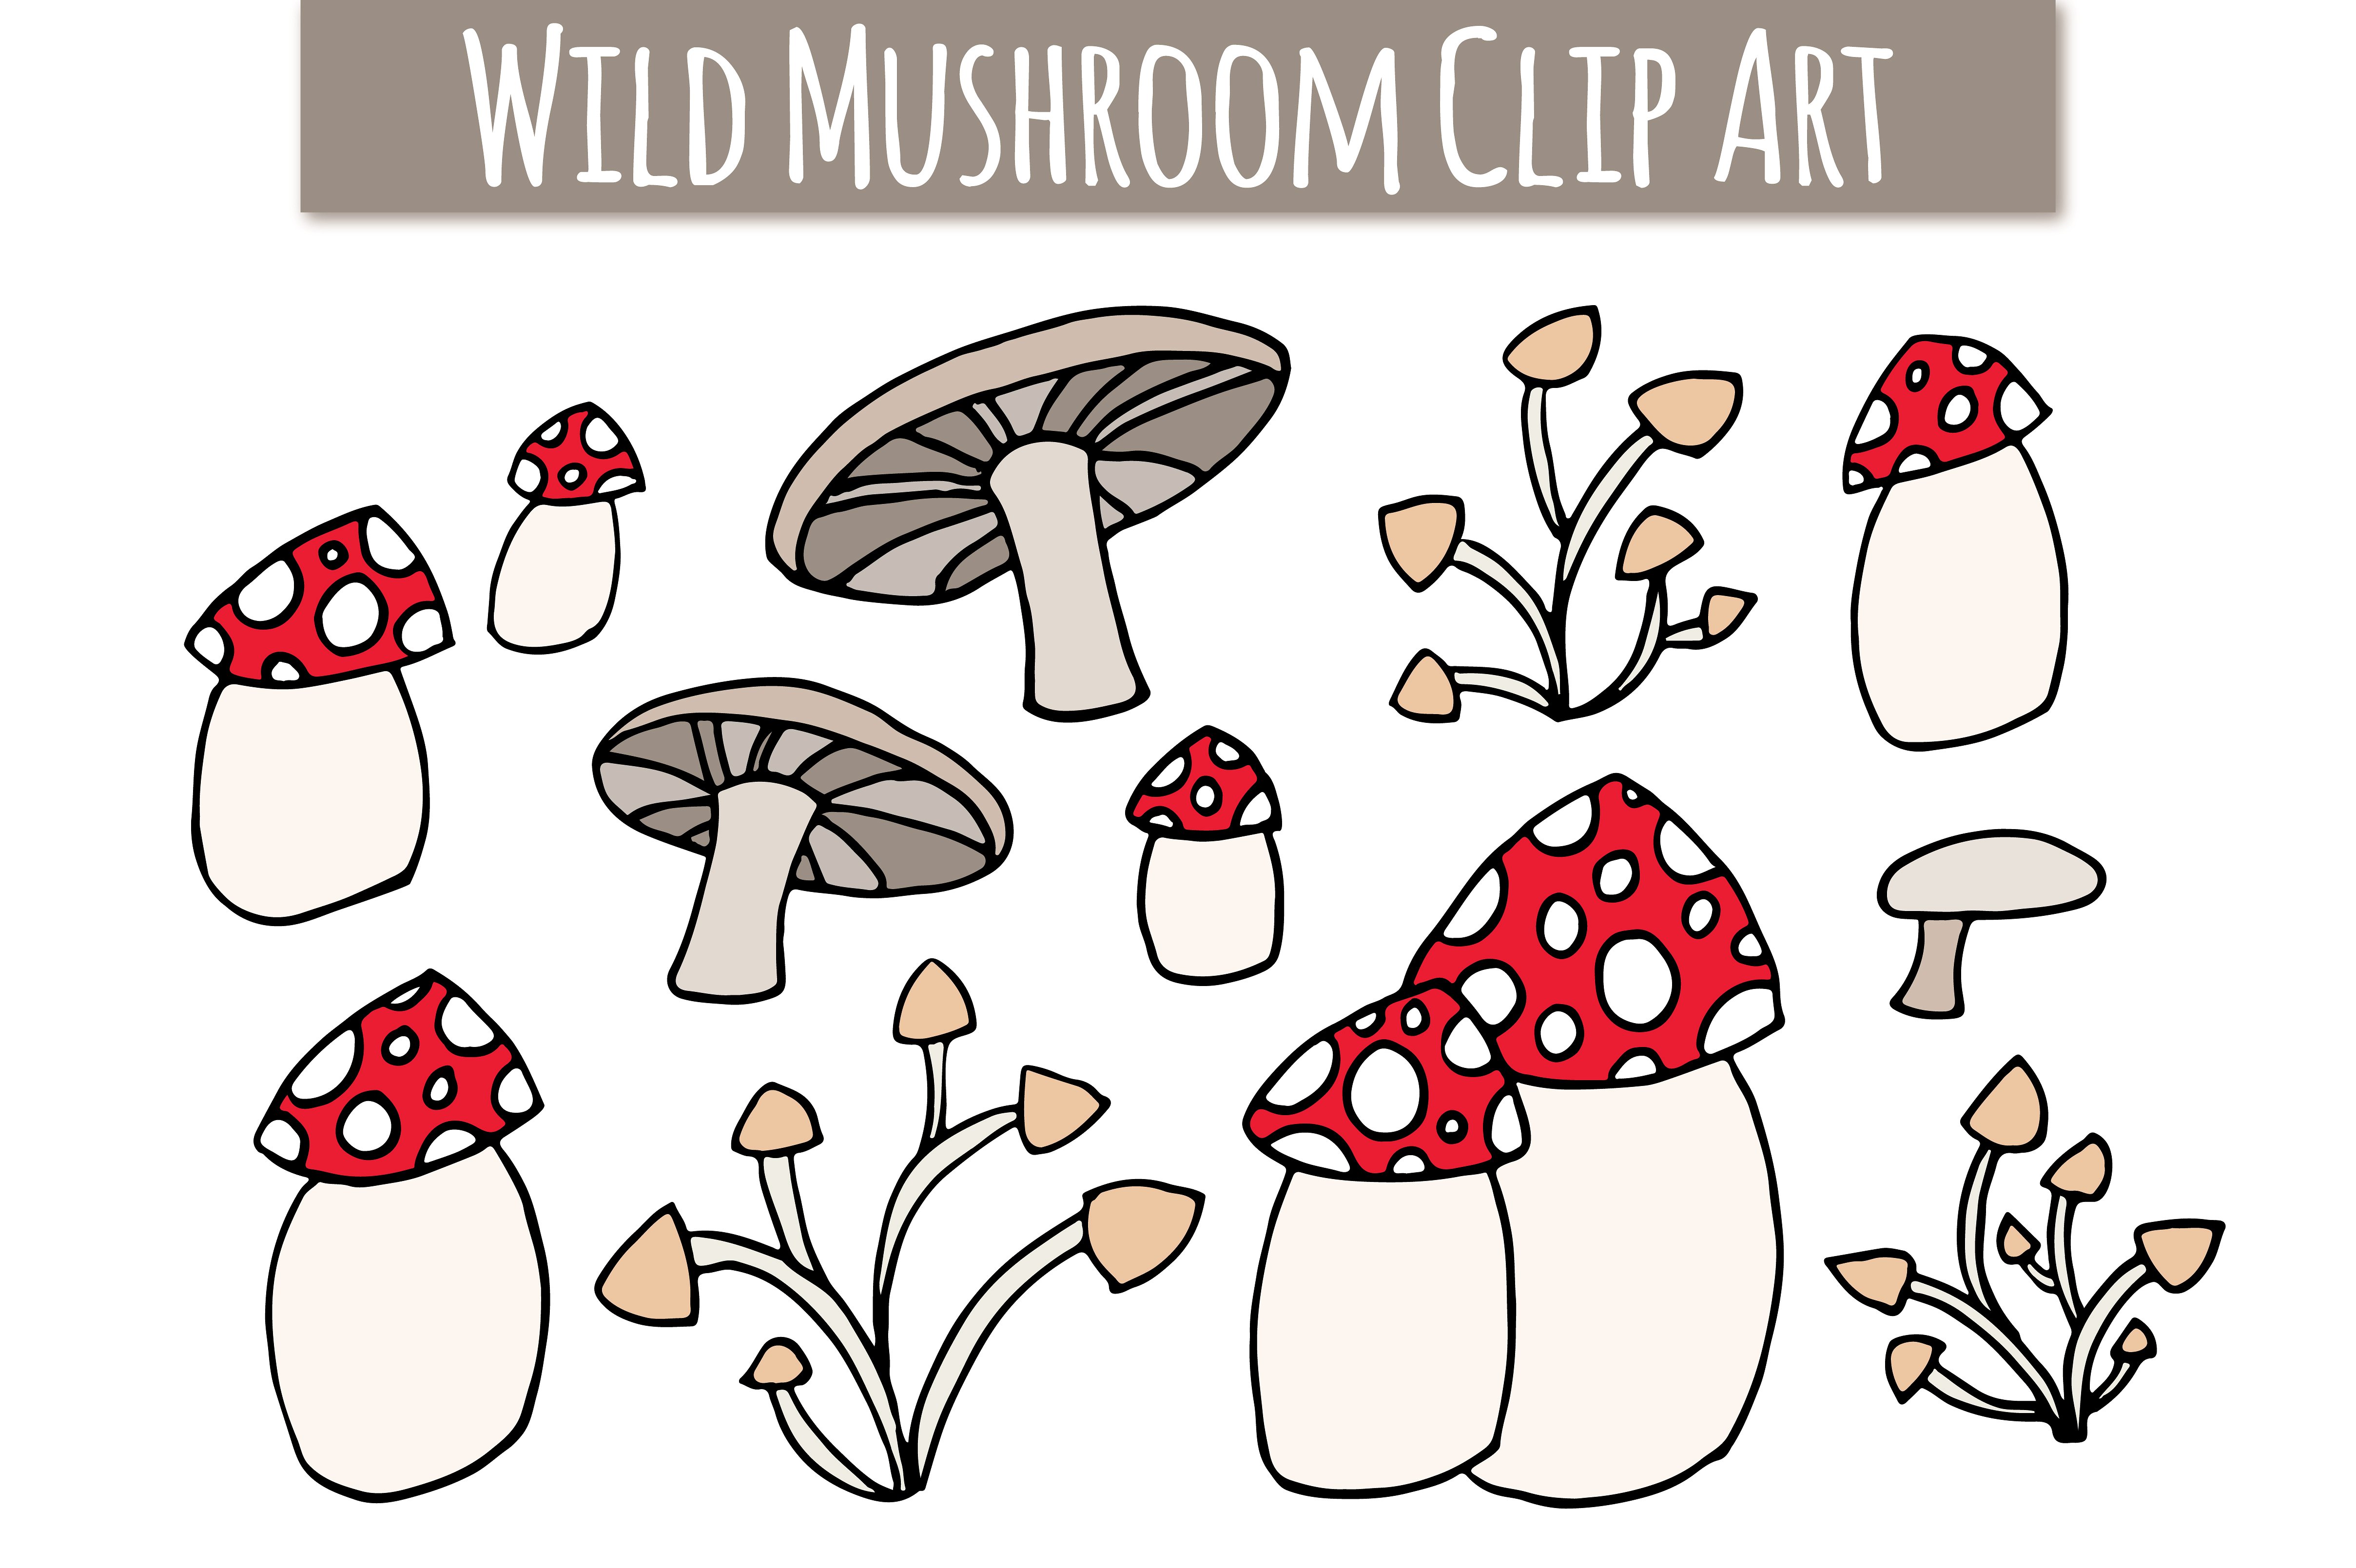 可爱的蘑菇主题Wild Mushroom Clip Art